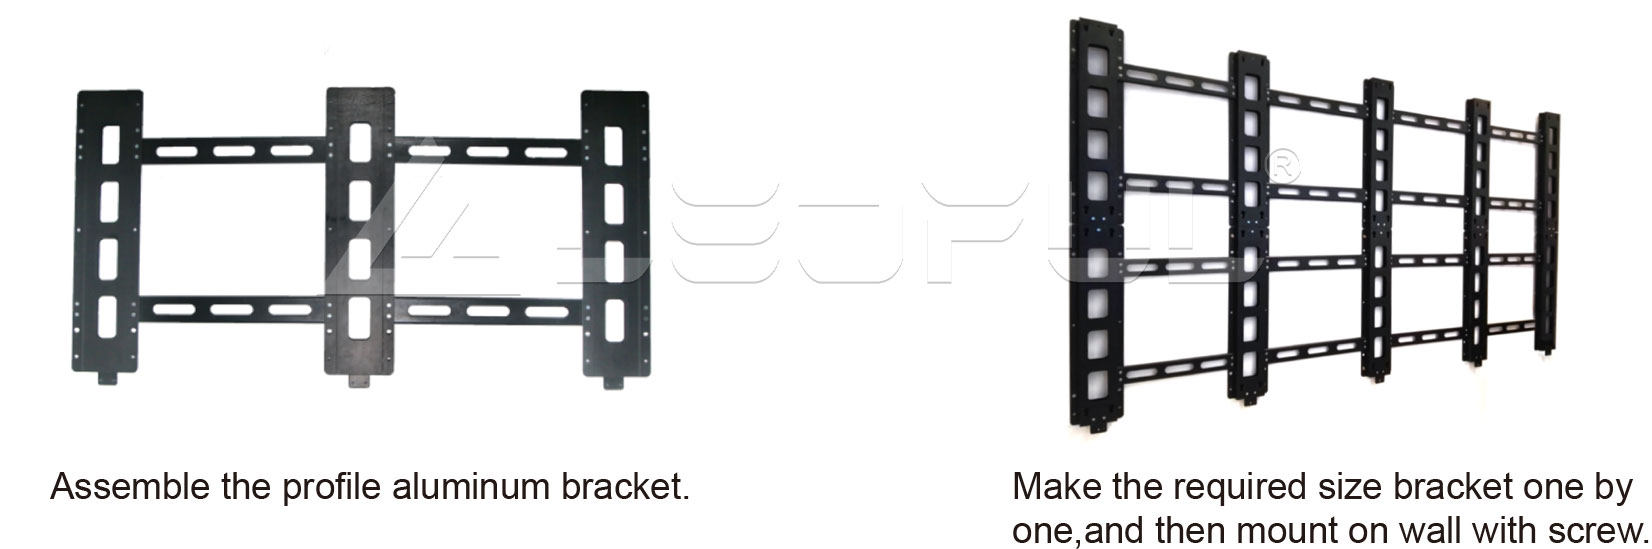 Easy Installation with LEDFUL Customized Bracket